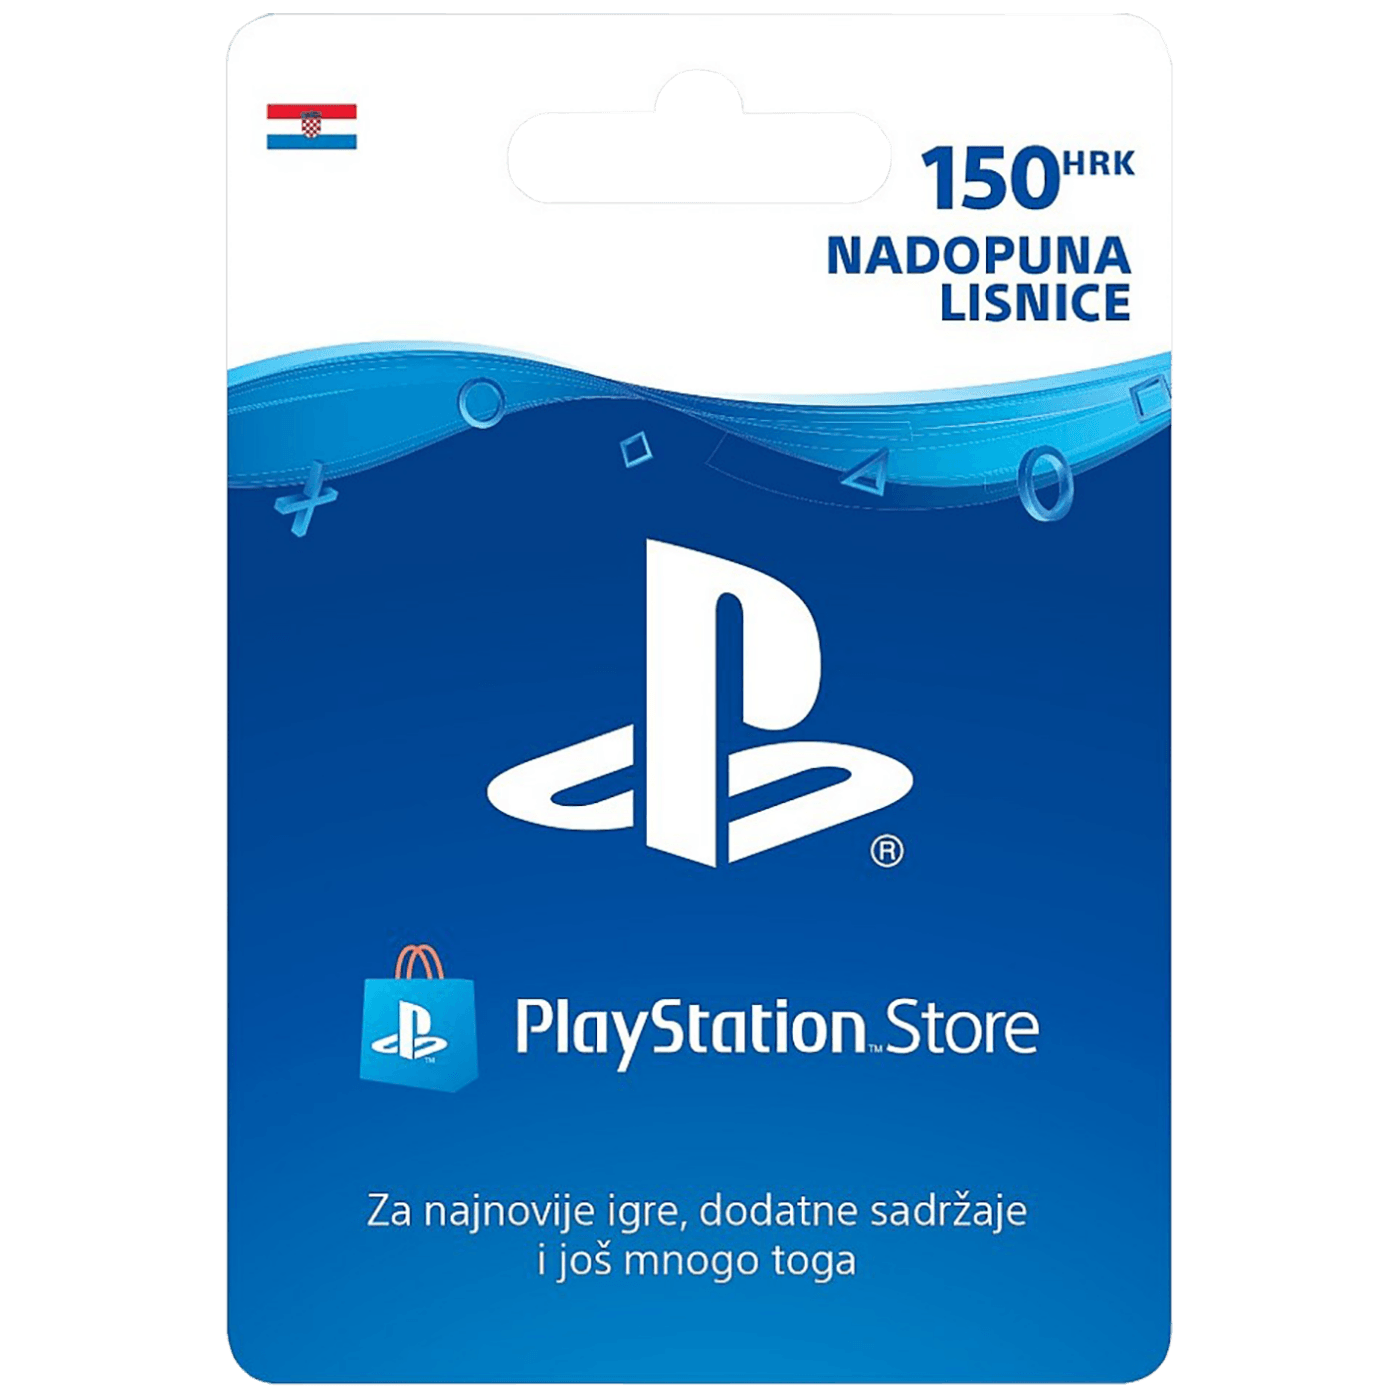 Nadopuna,  PlayStation Live Card